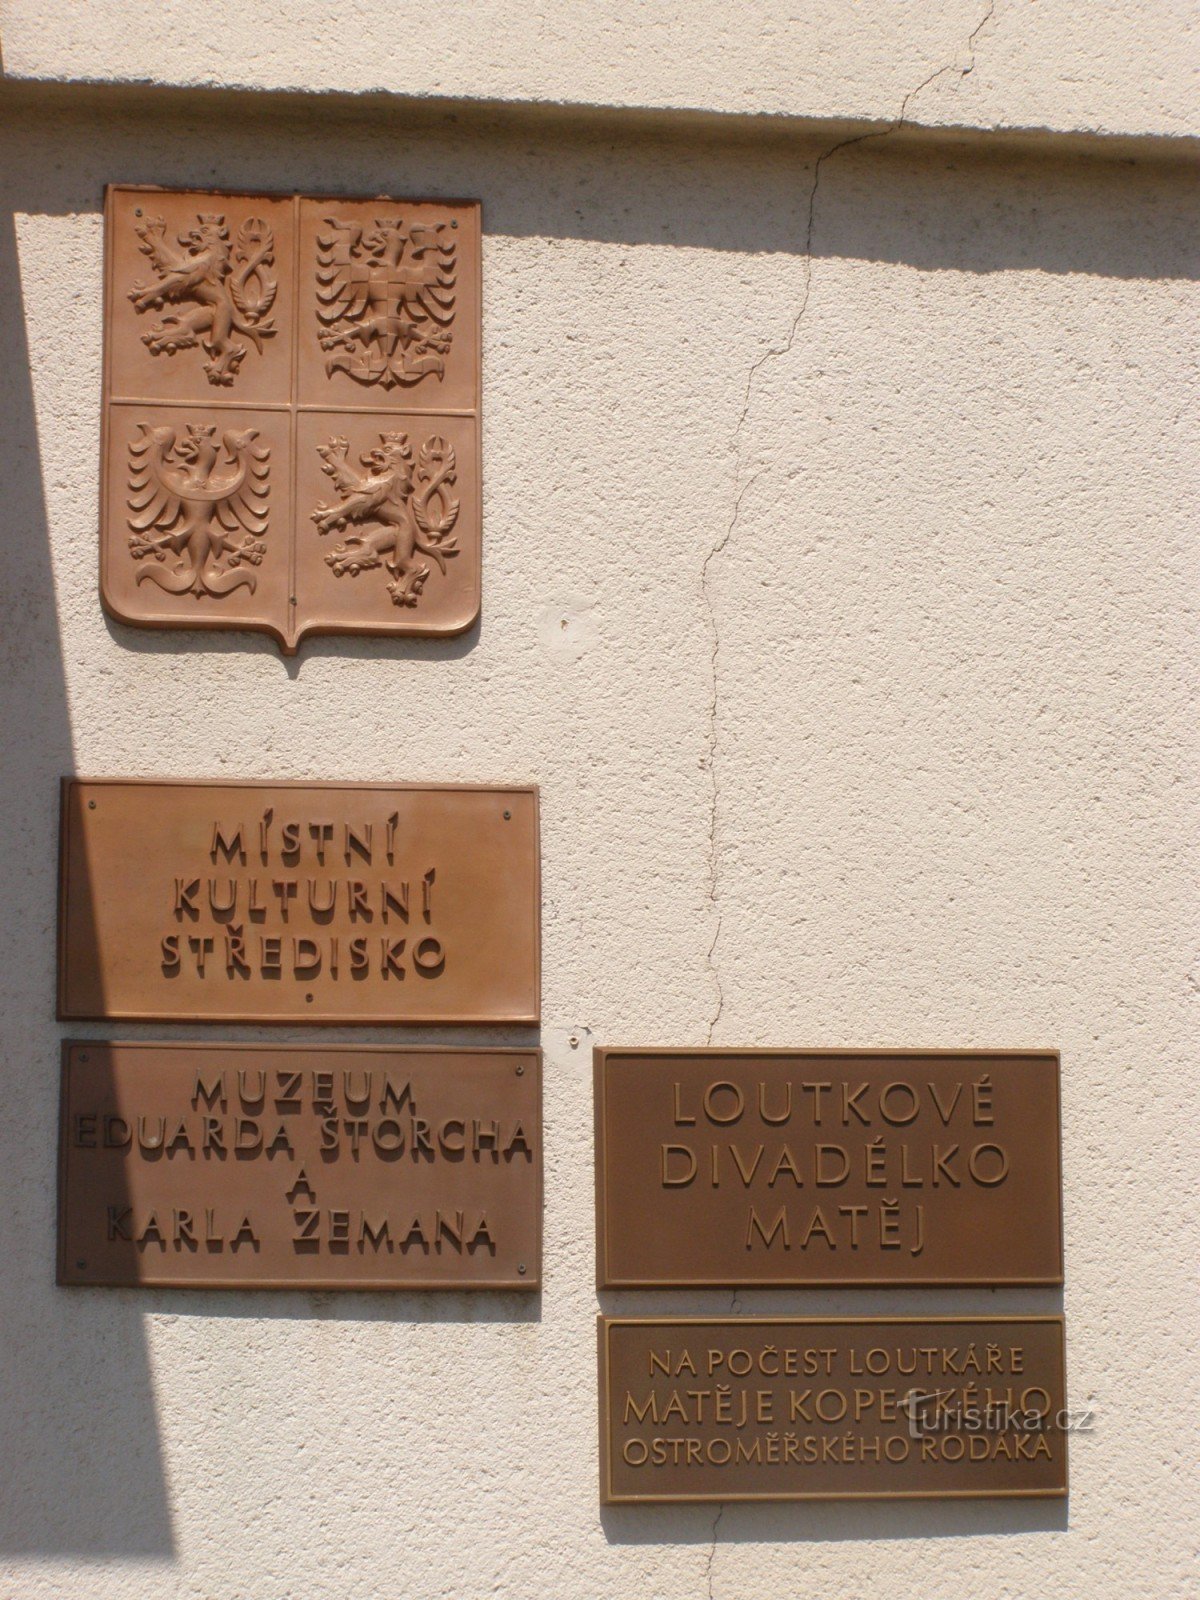 Ostroměř - museum for Eduard Štorch og Karel Zeman